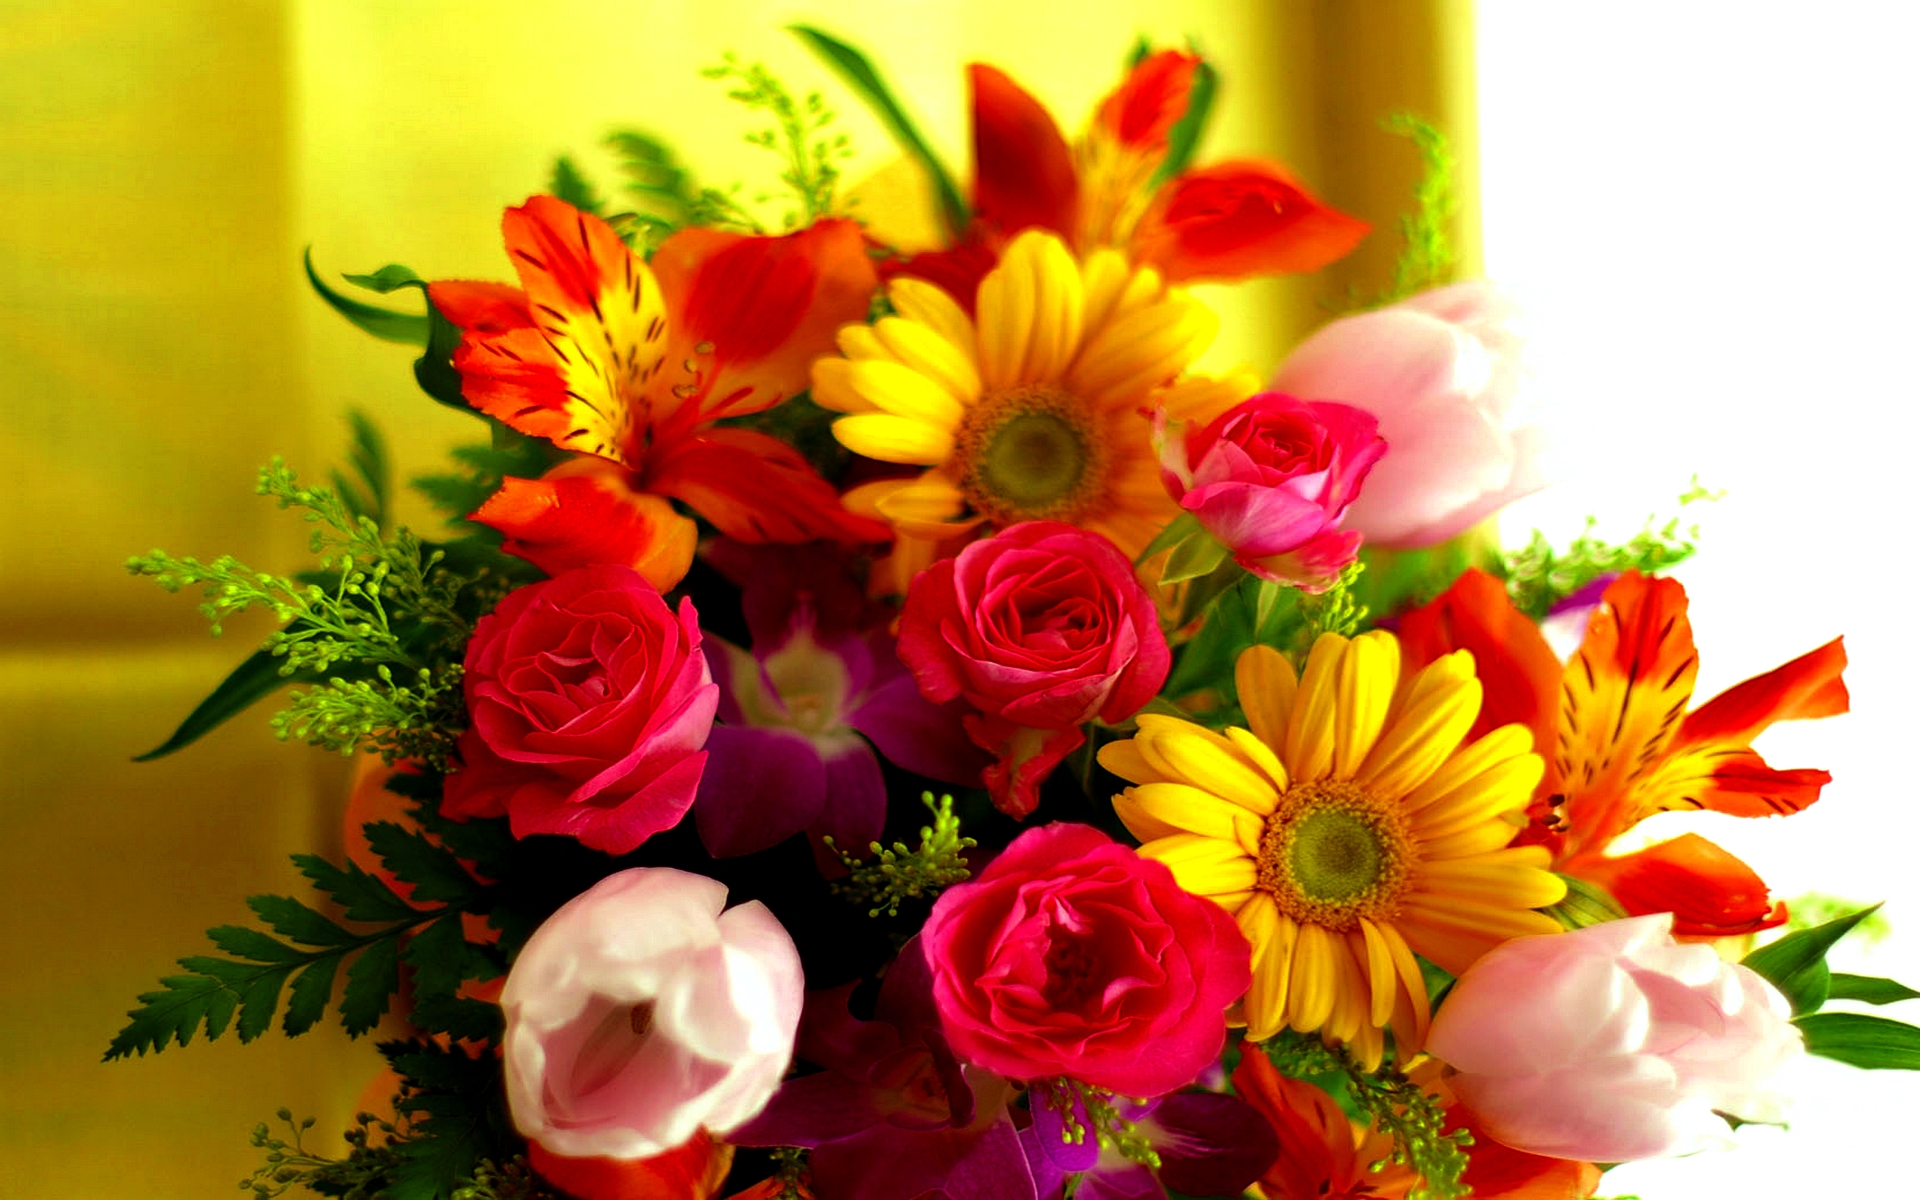 flowers-beautiful-flowers-bouquet-hd-wallpaper-beautiful-flowers-bouquet-beautiful-flower-bouquet-scraps-beautiful-flowers-bouquet-wallpapers-beautiful-flower-bouquets-for-weddings-beautiful-flower-bo